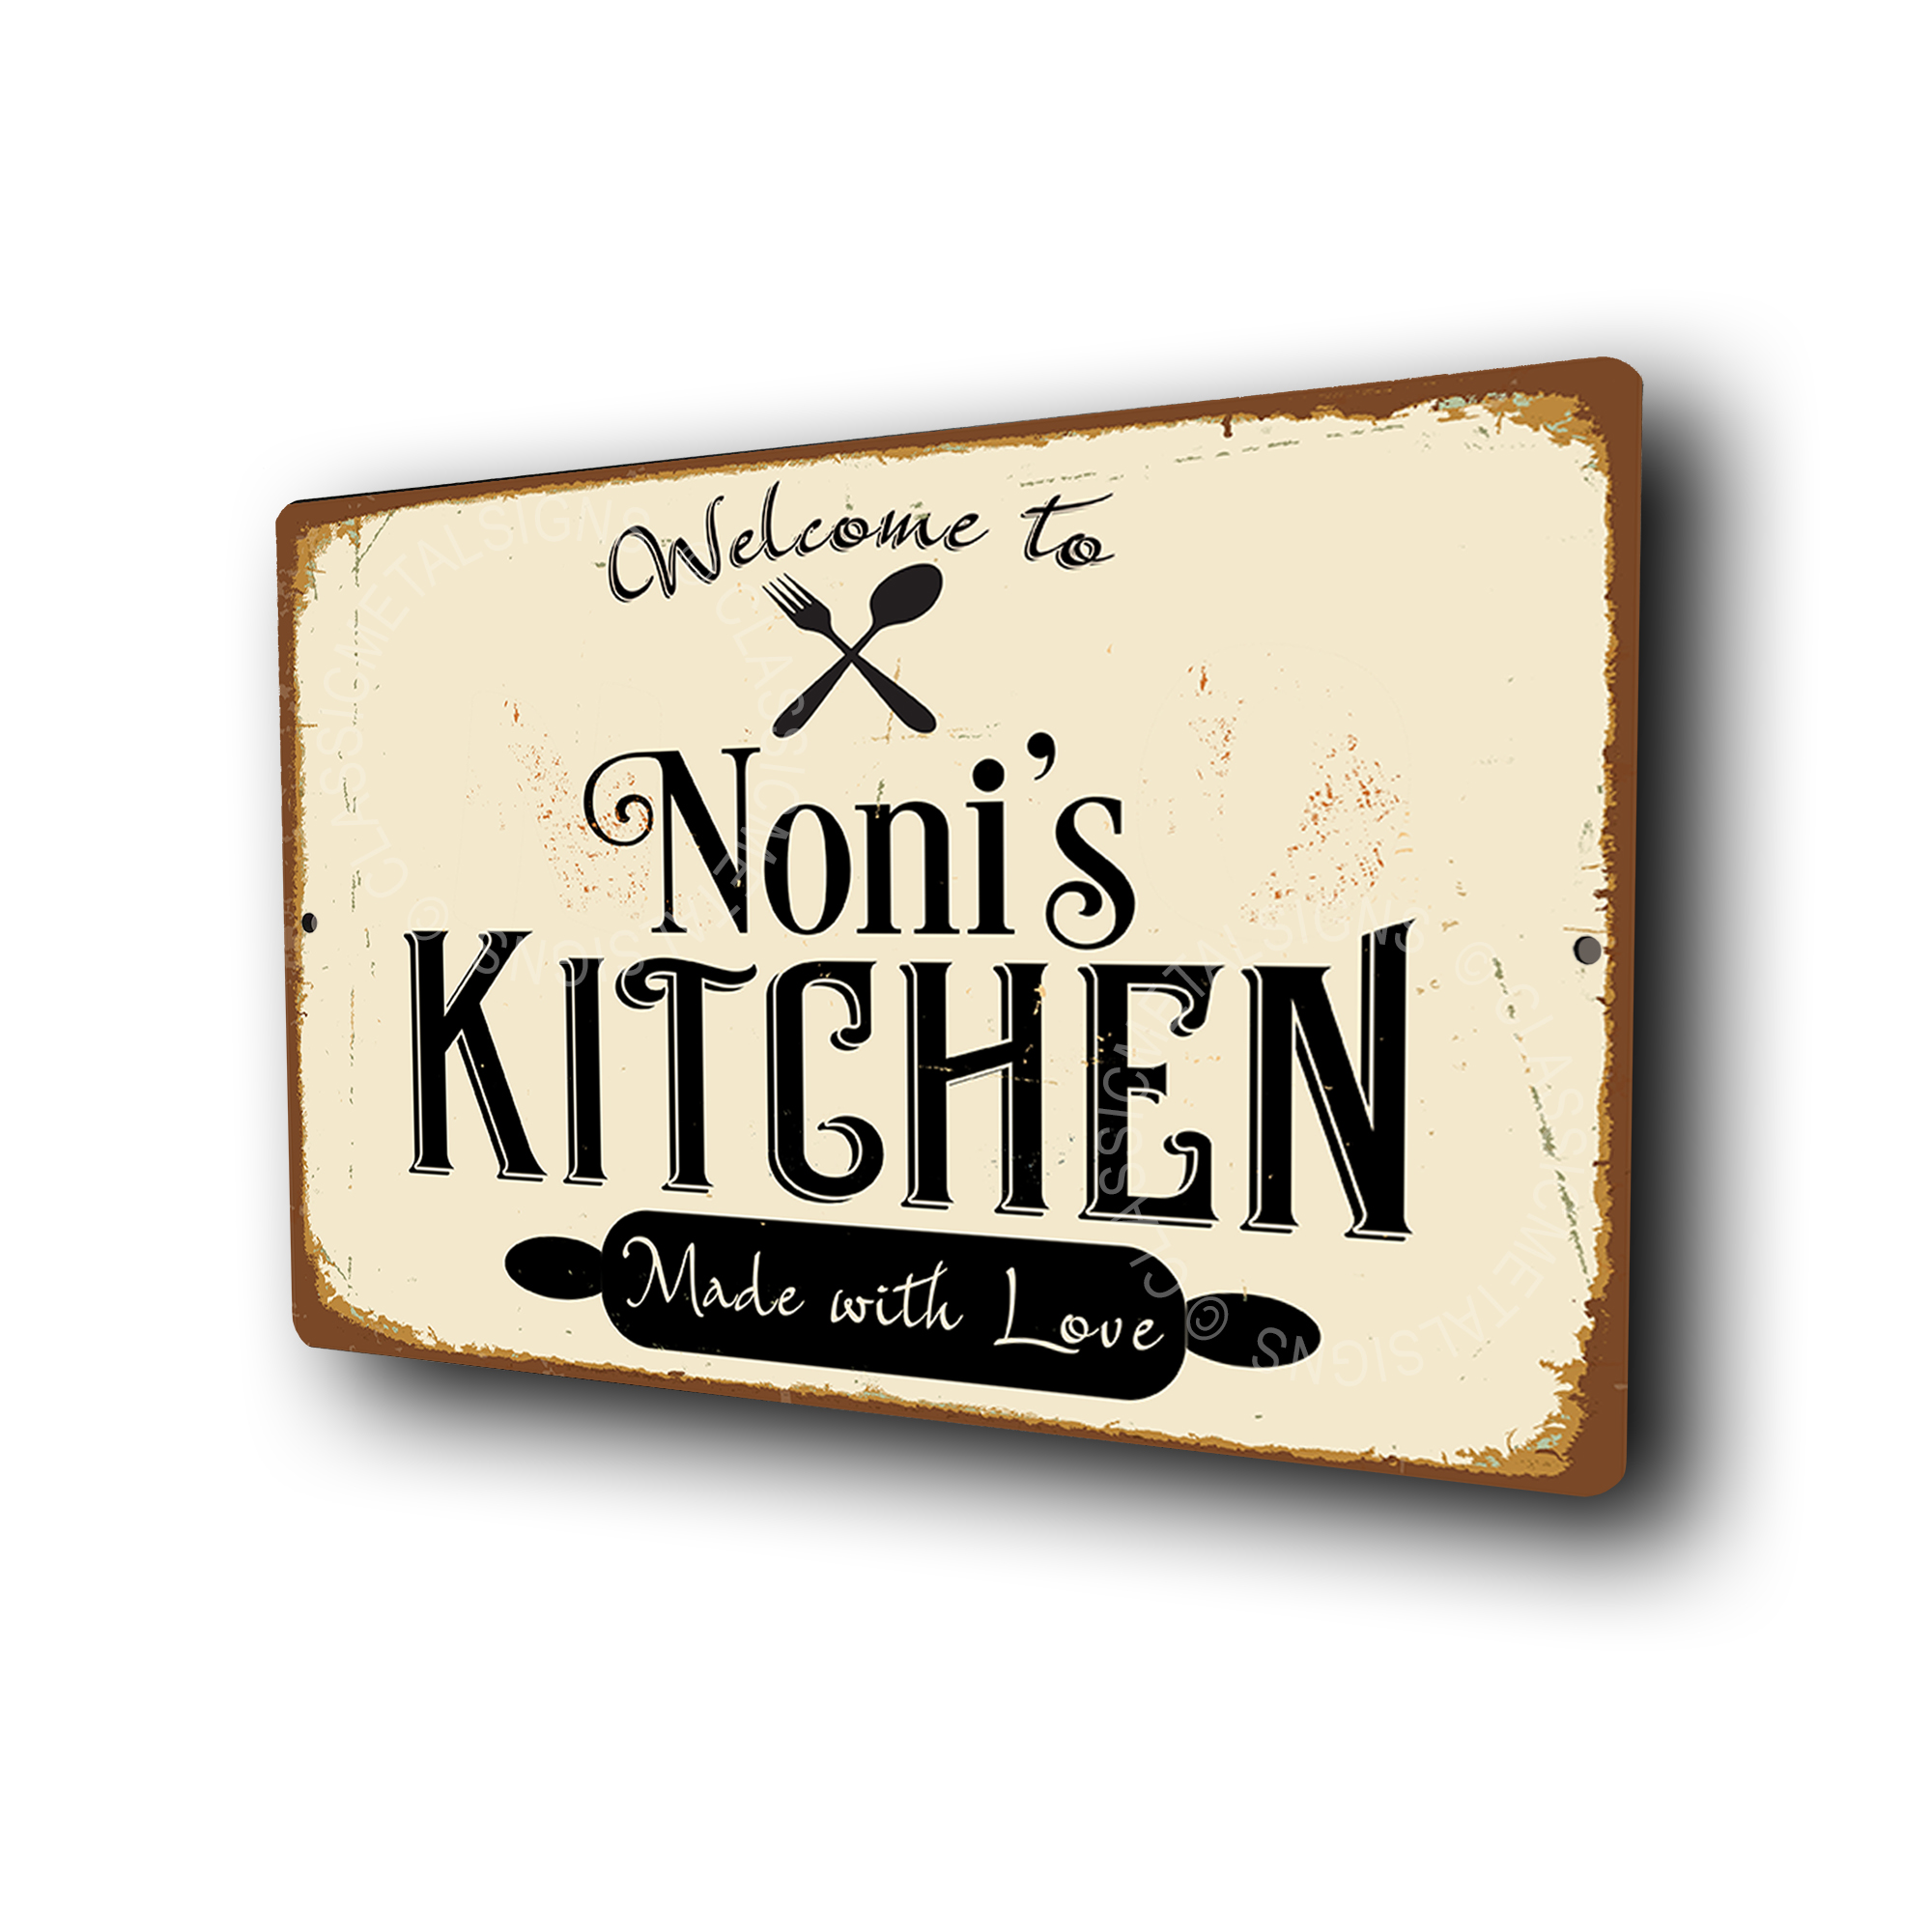 Noni's Kitchen Signs